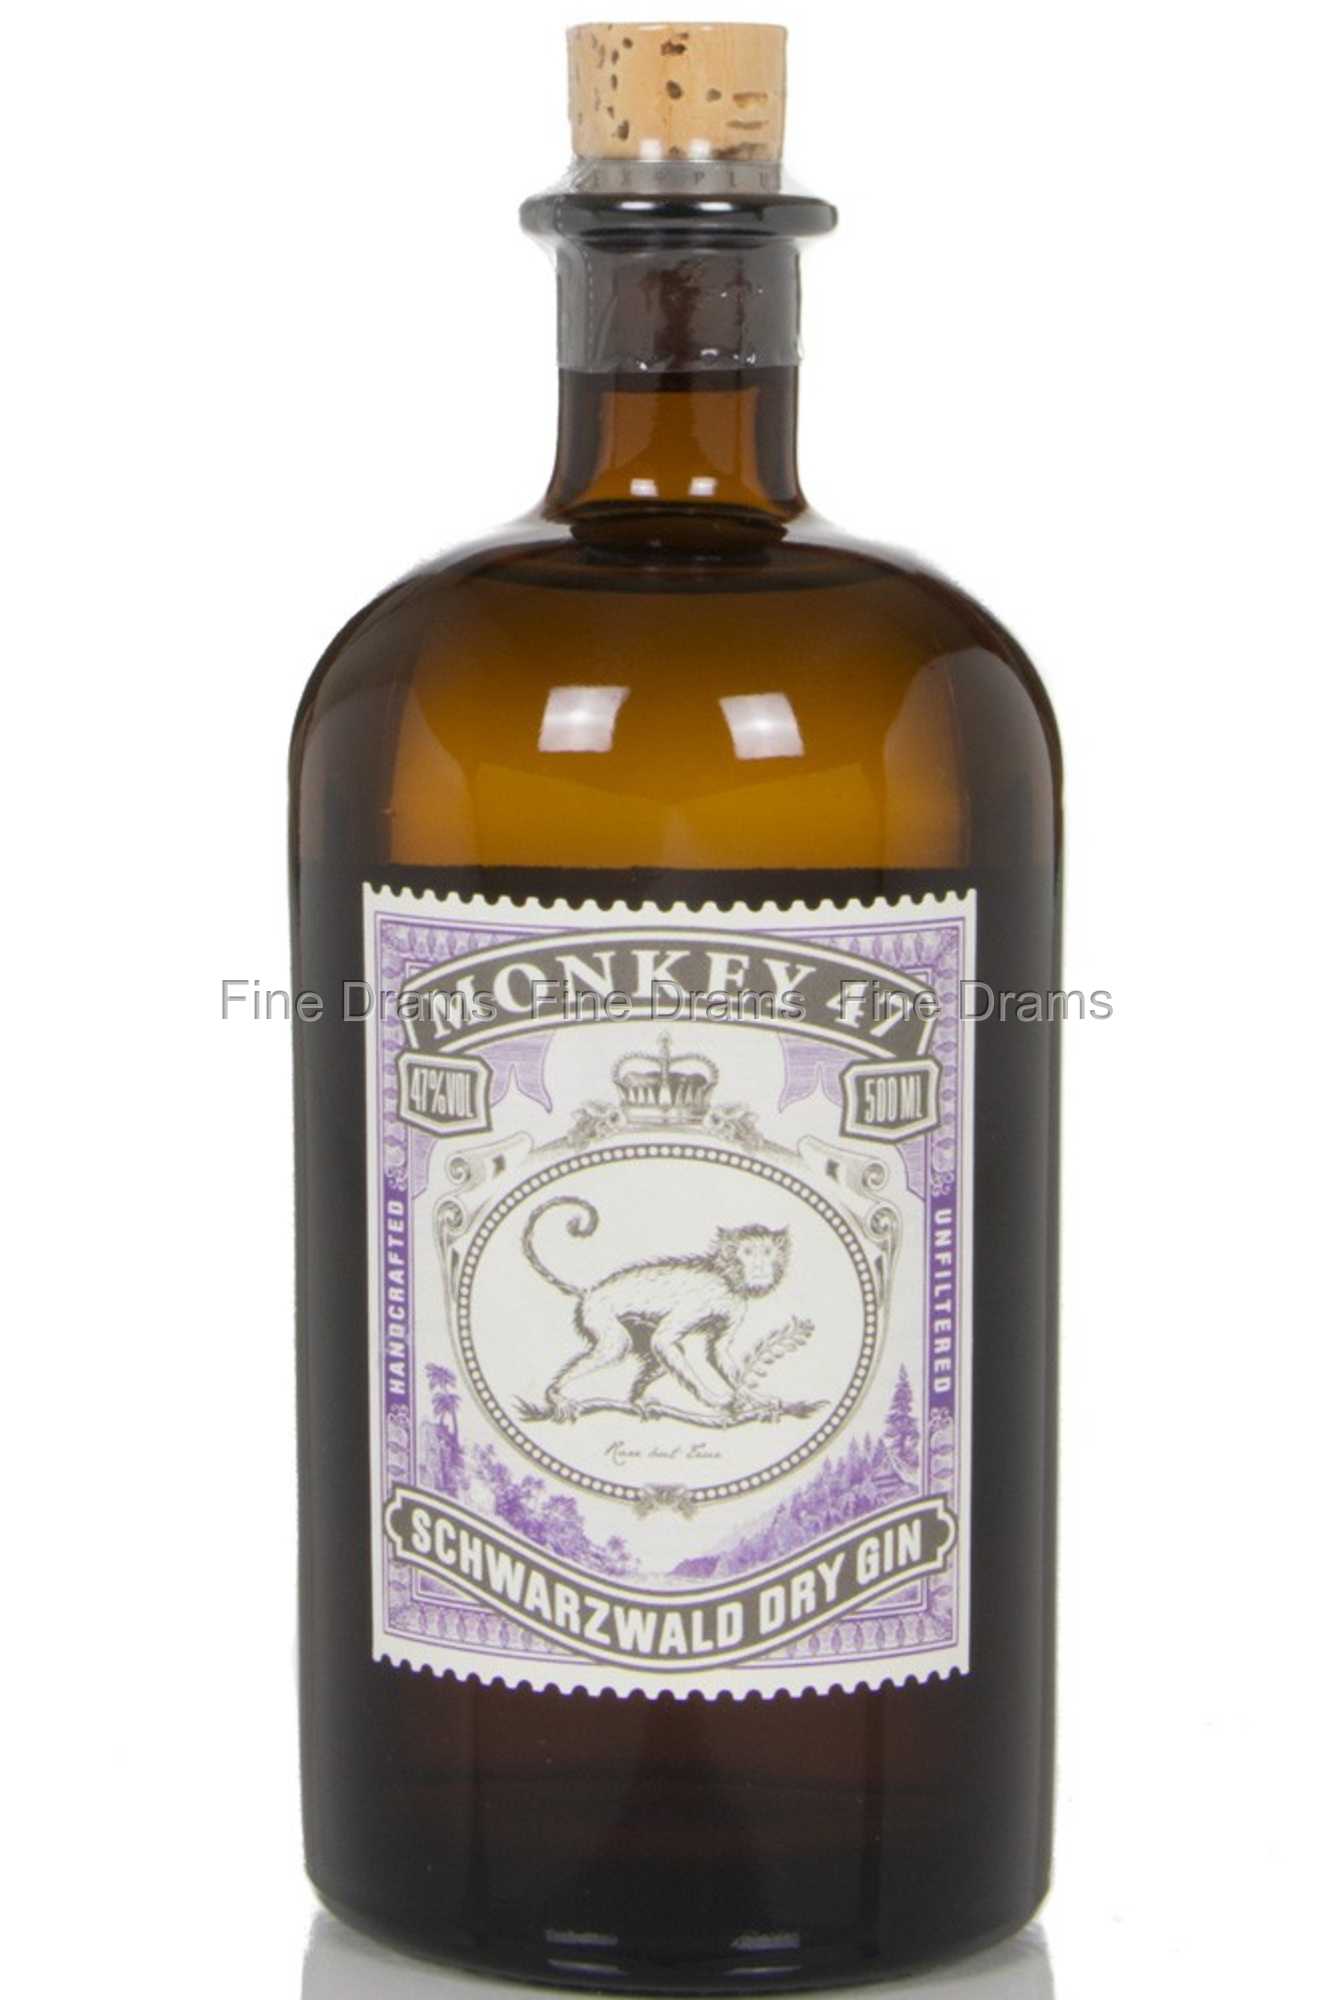 Schwarzwald Gin 47 Monkey Dry